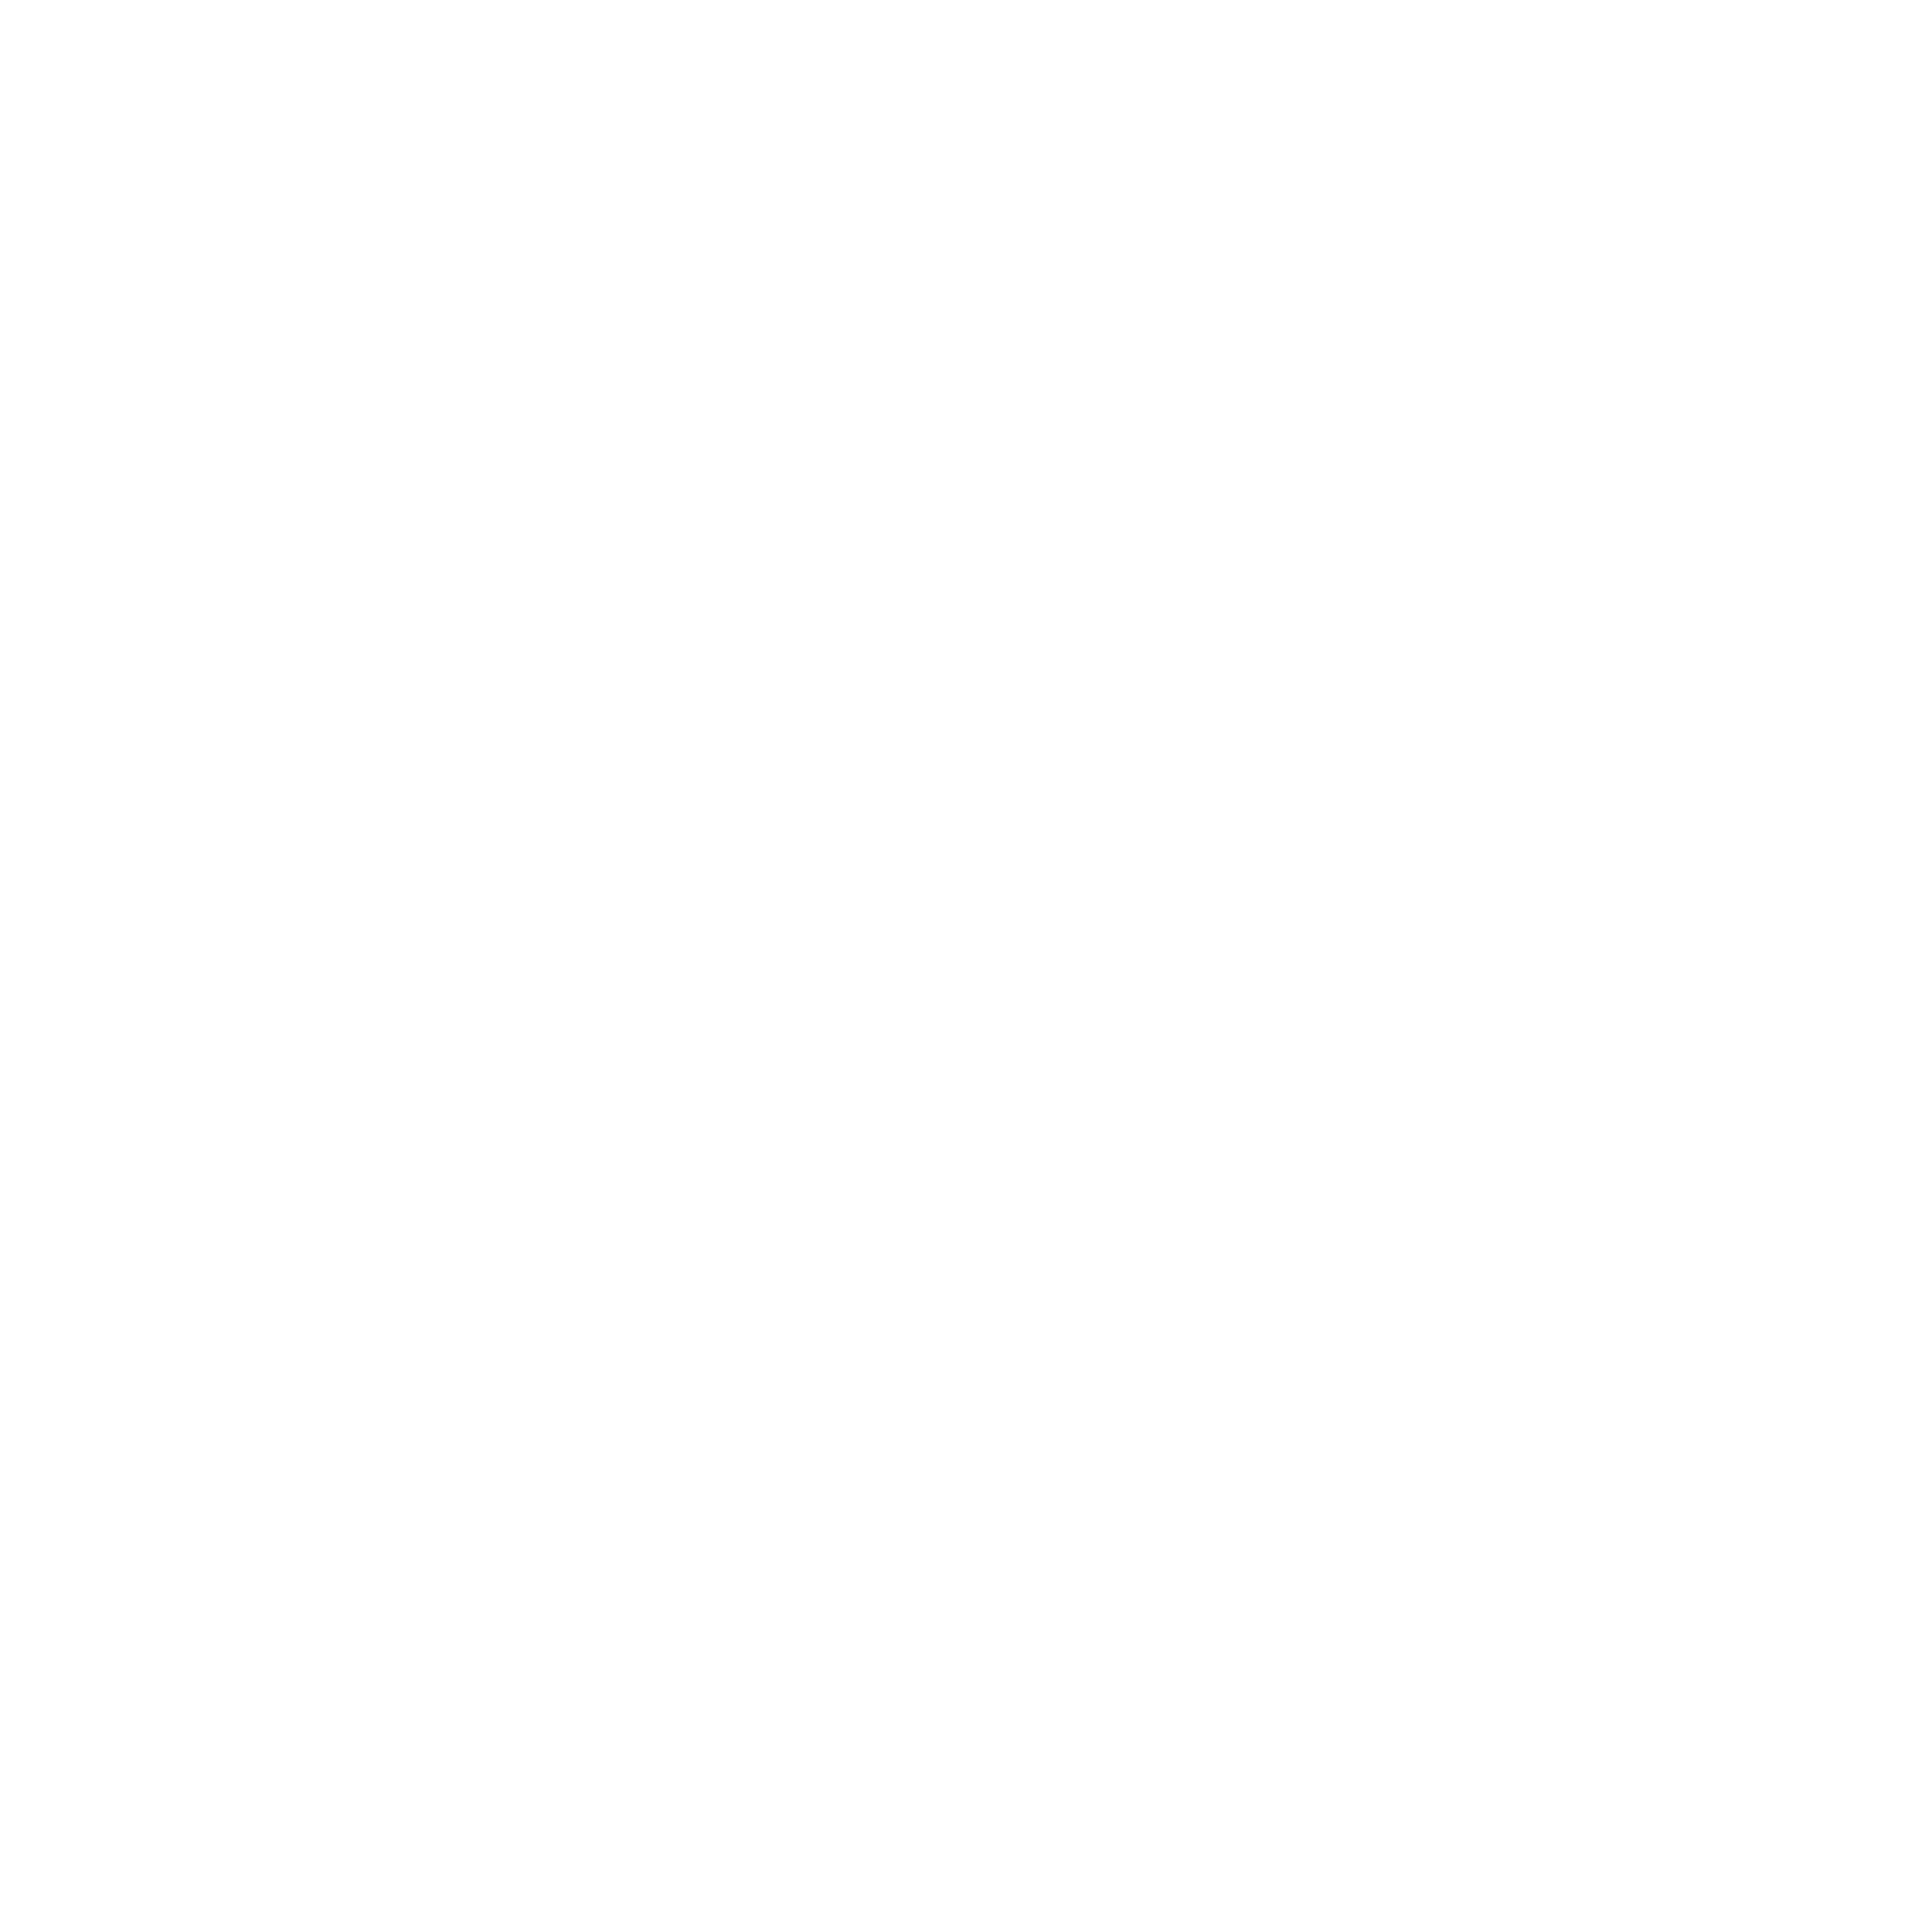 84 MILLION LITECOIN